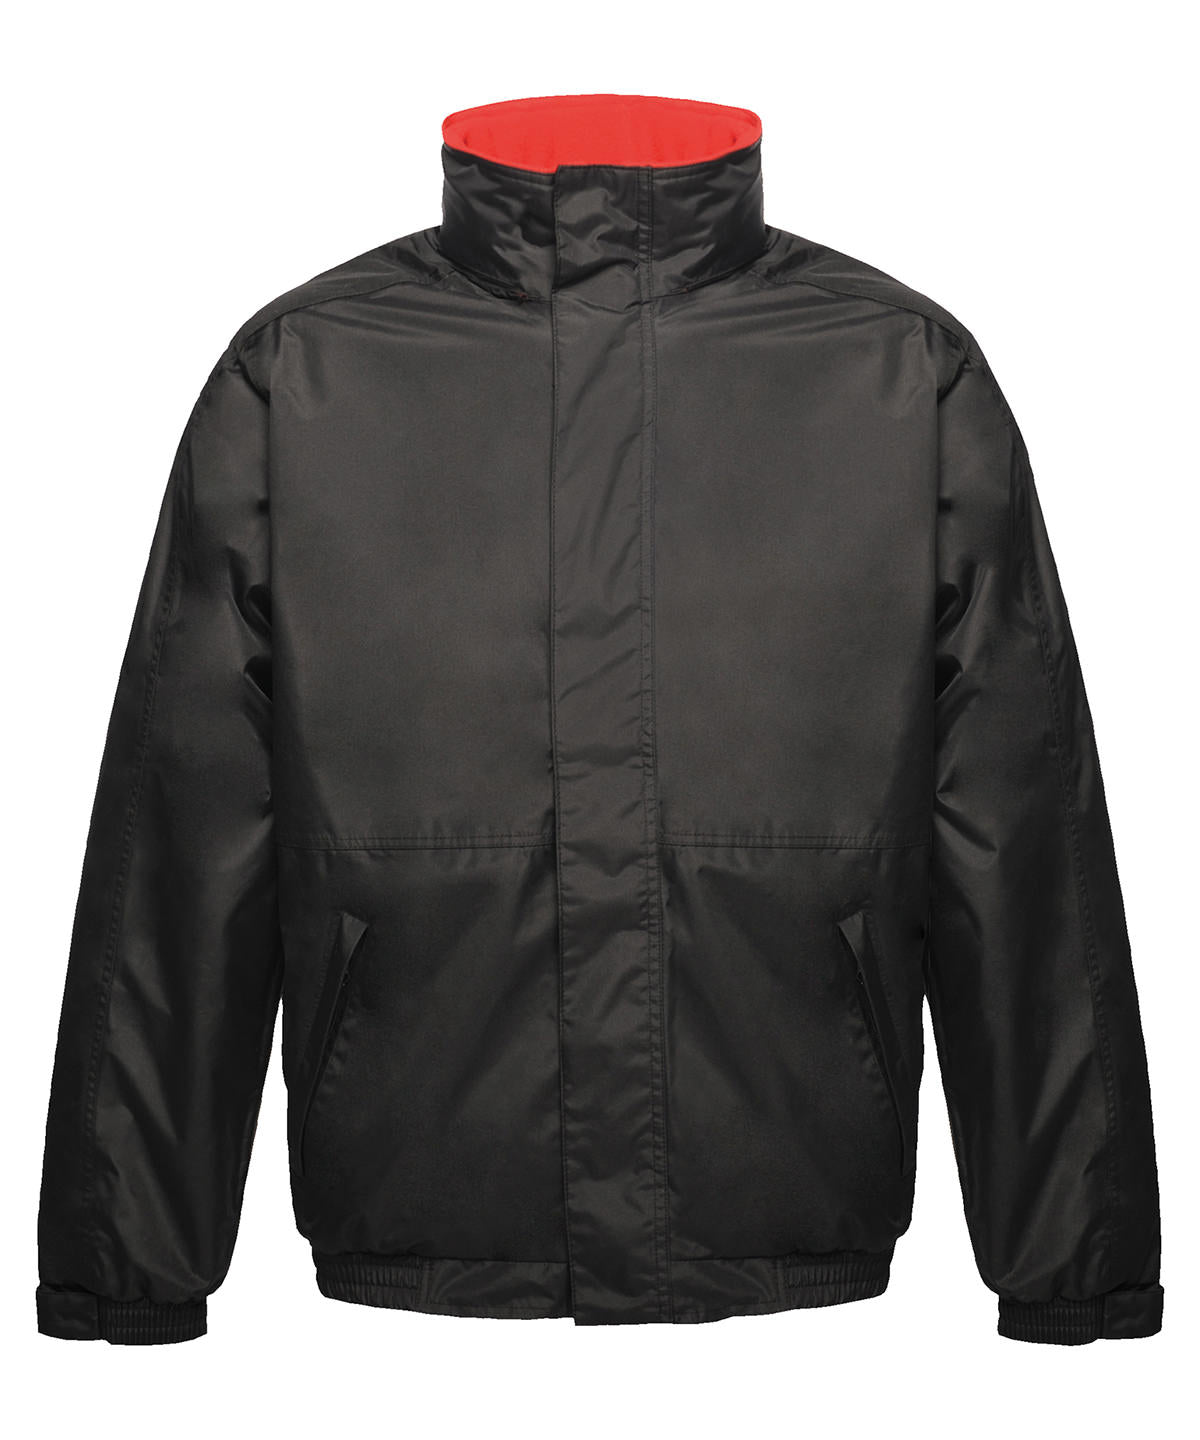 Dover jacket | Black/Red